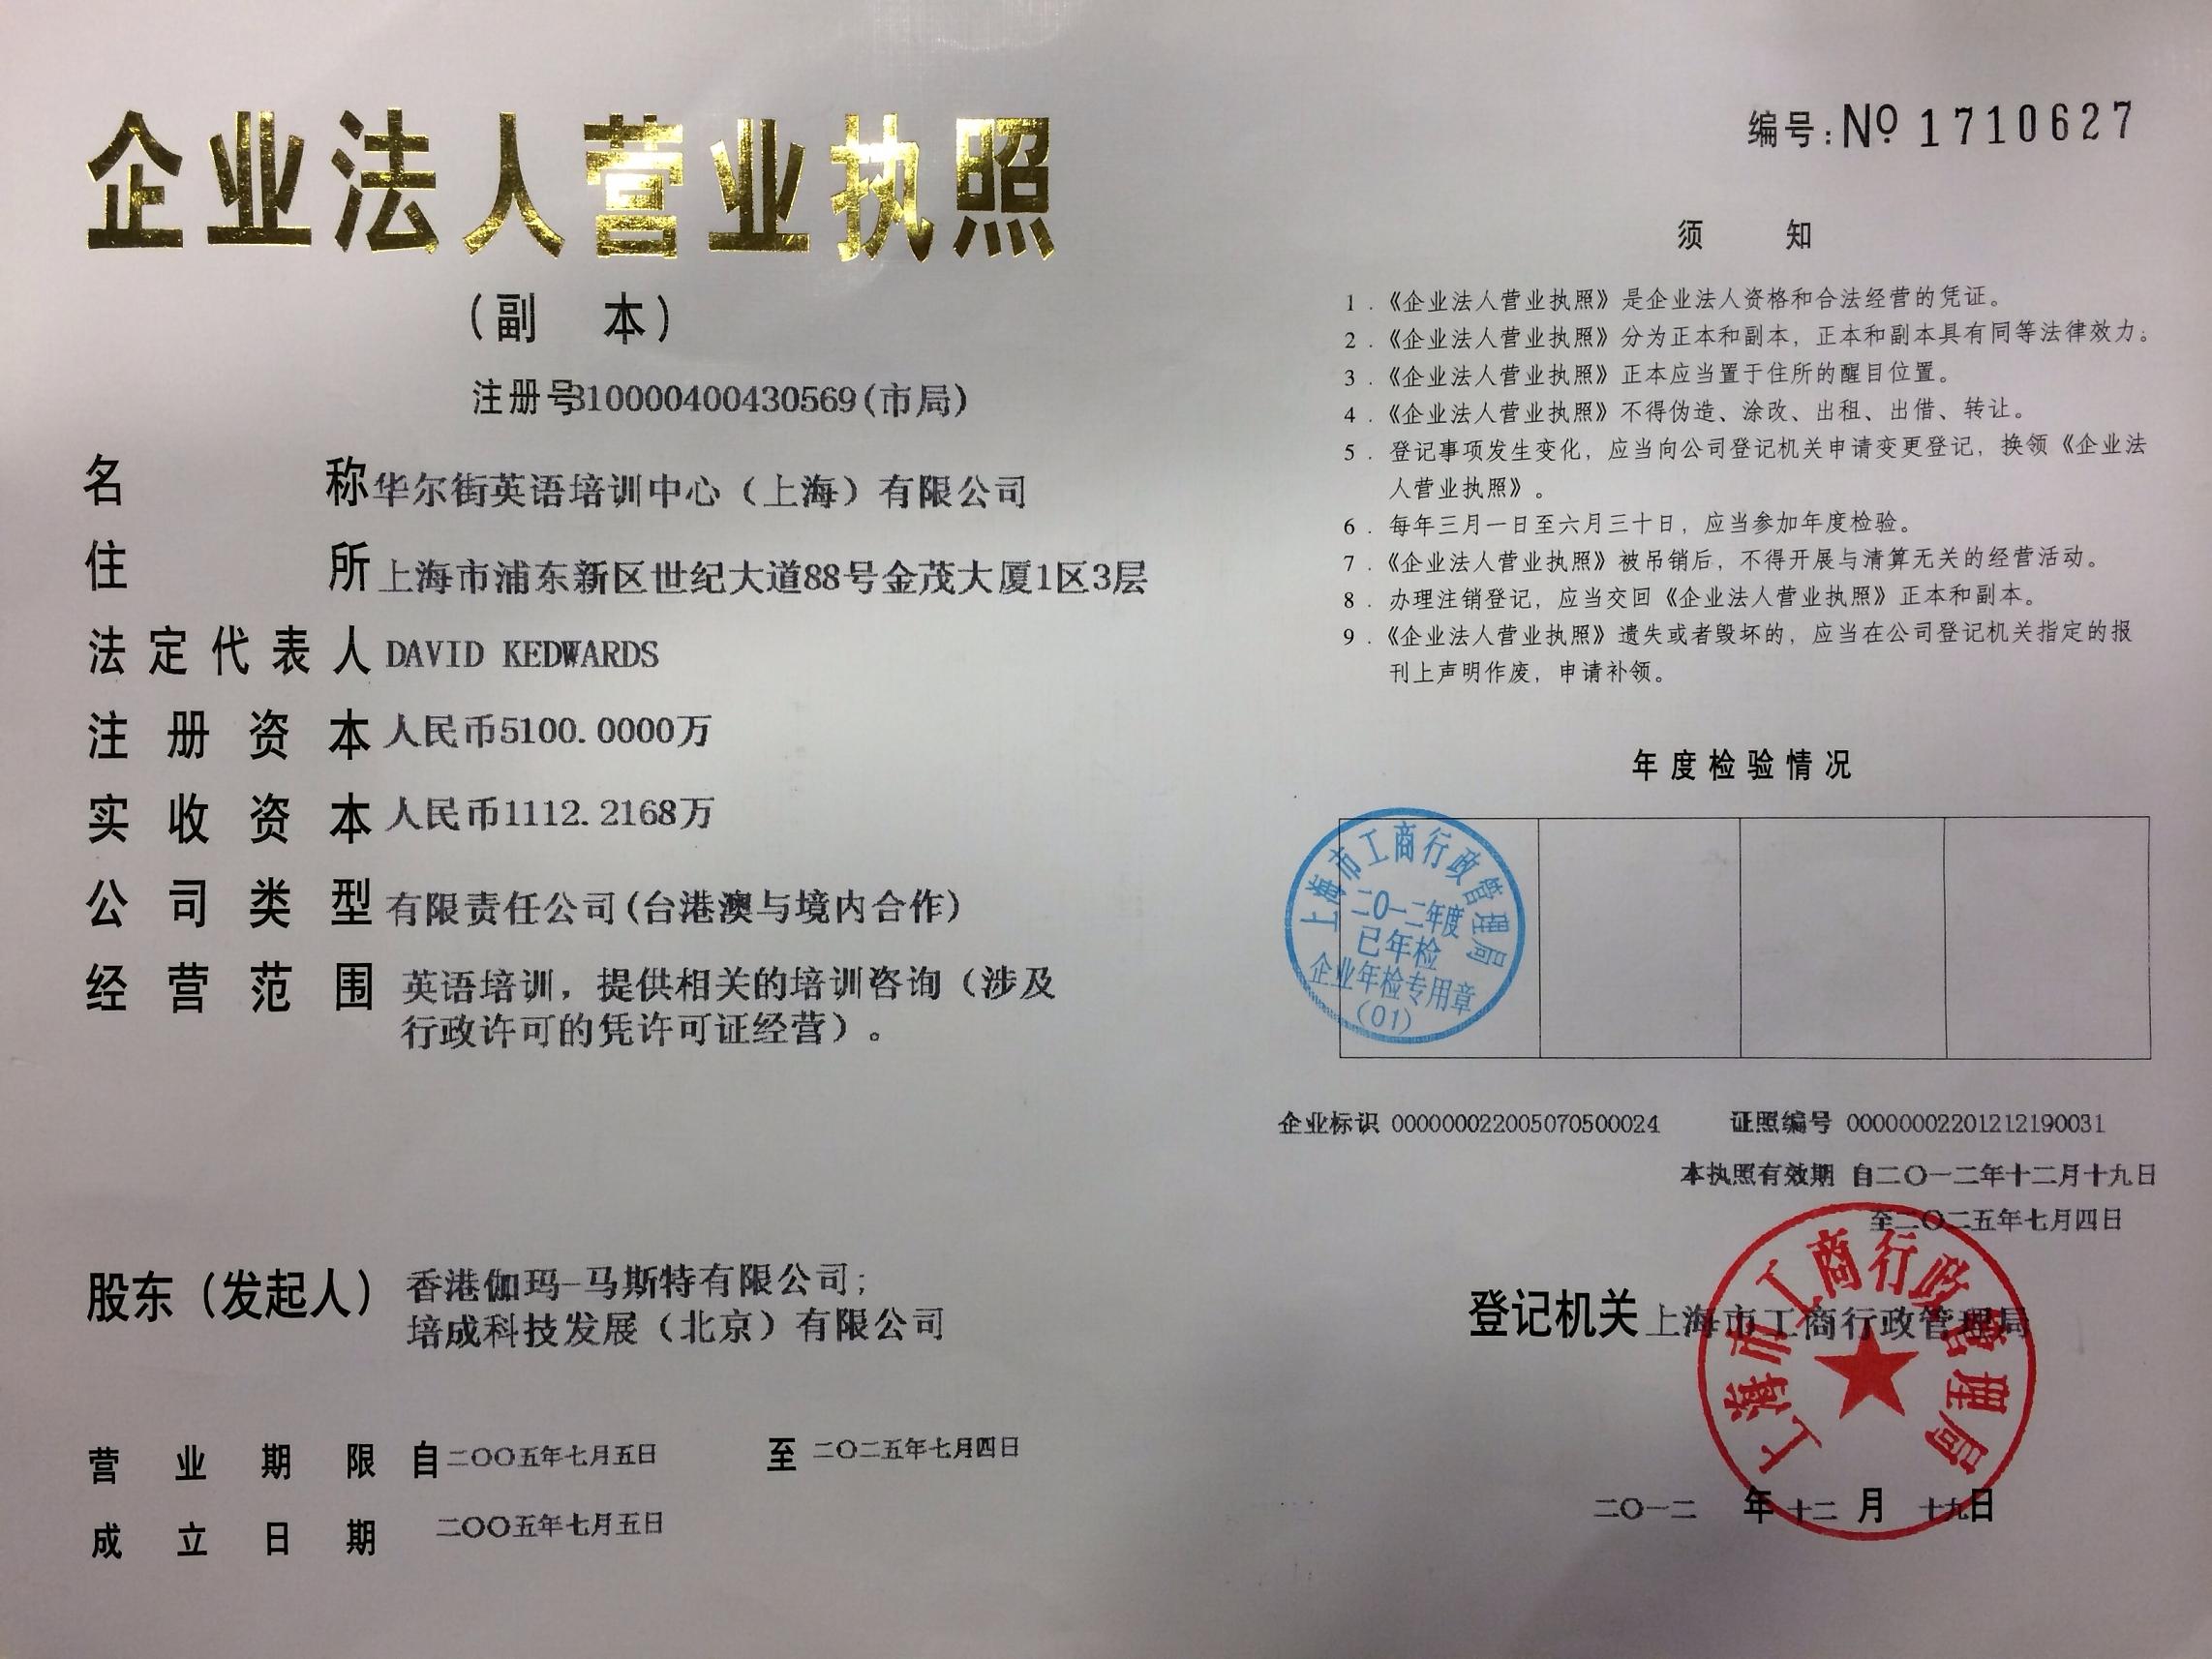 性别要求:不限 年龄要求:20-30岁 工作地点:上海上海浦东陆家嘴